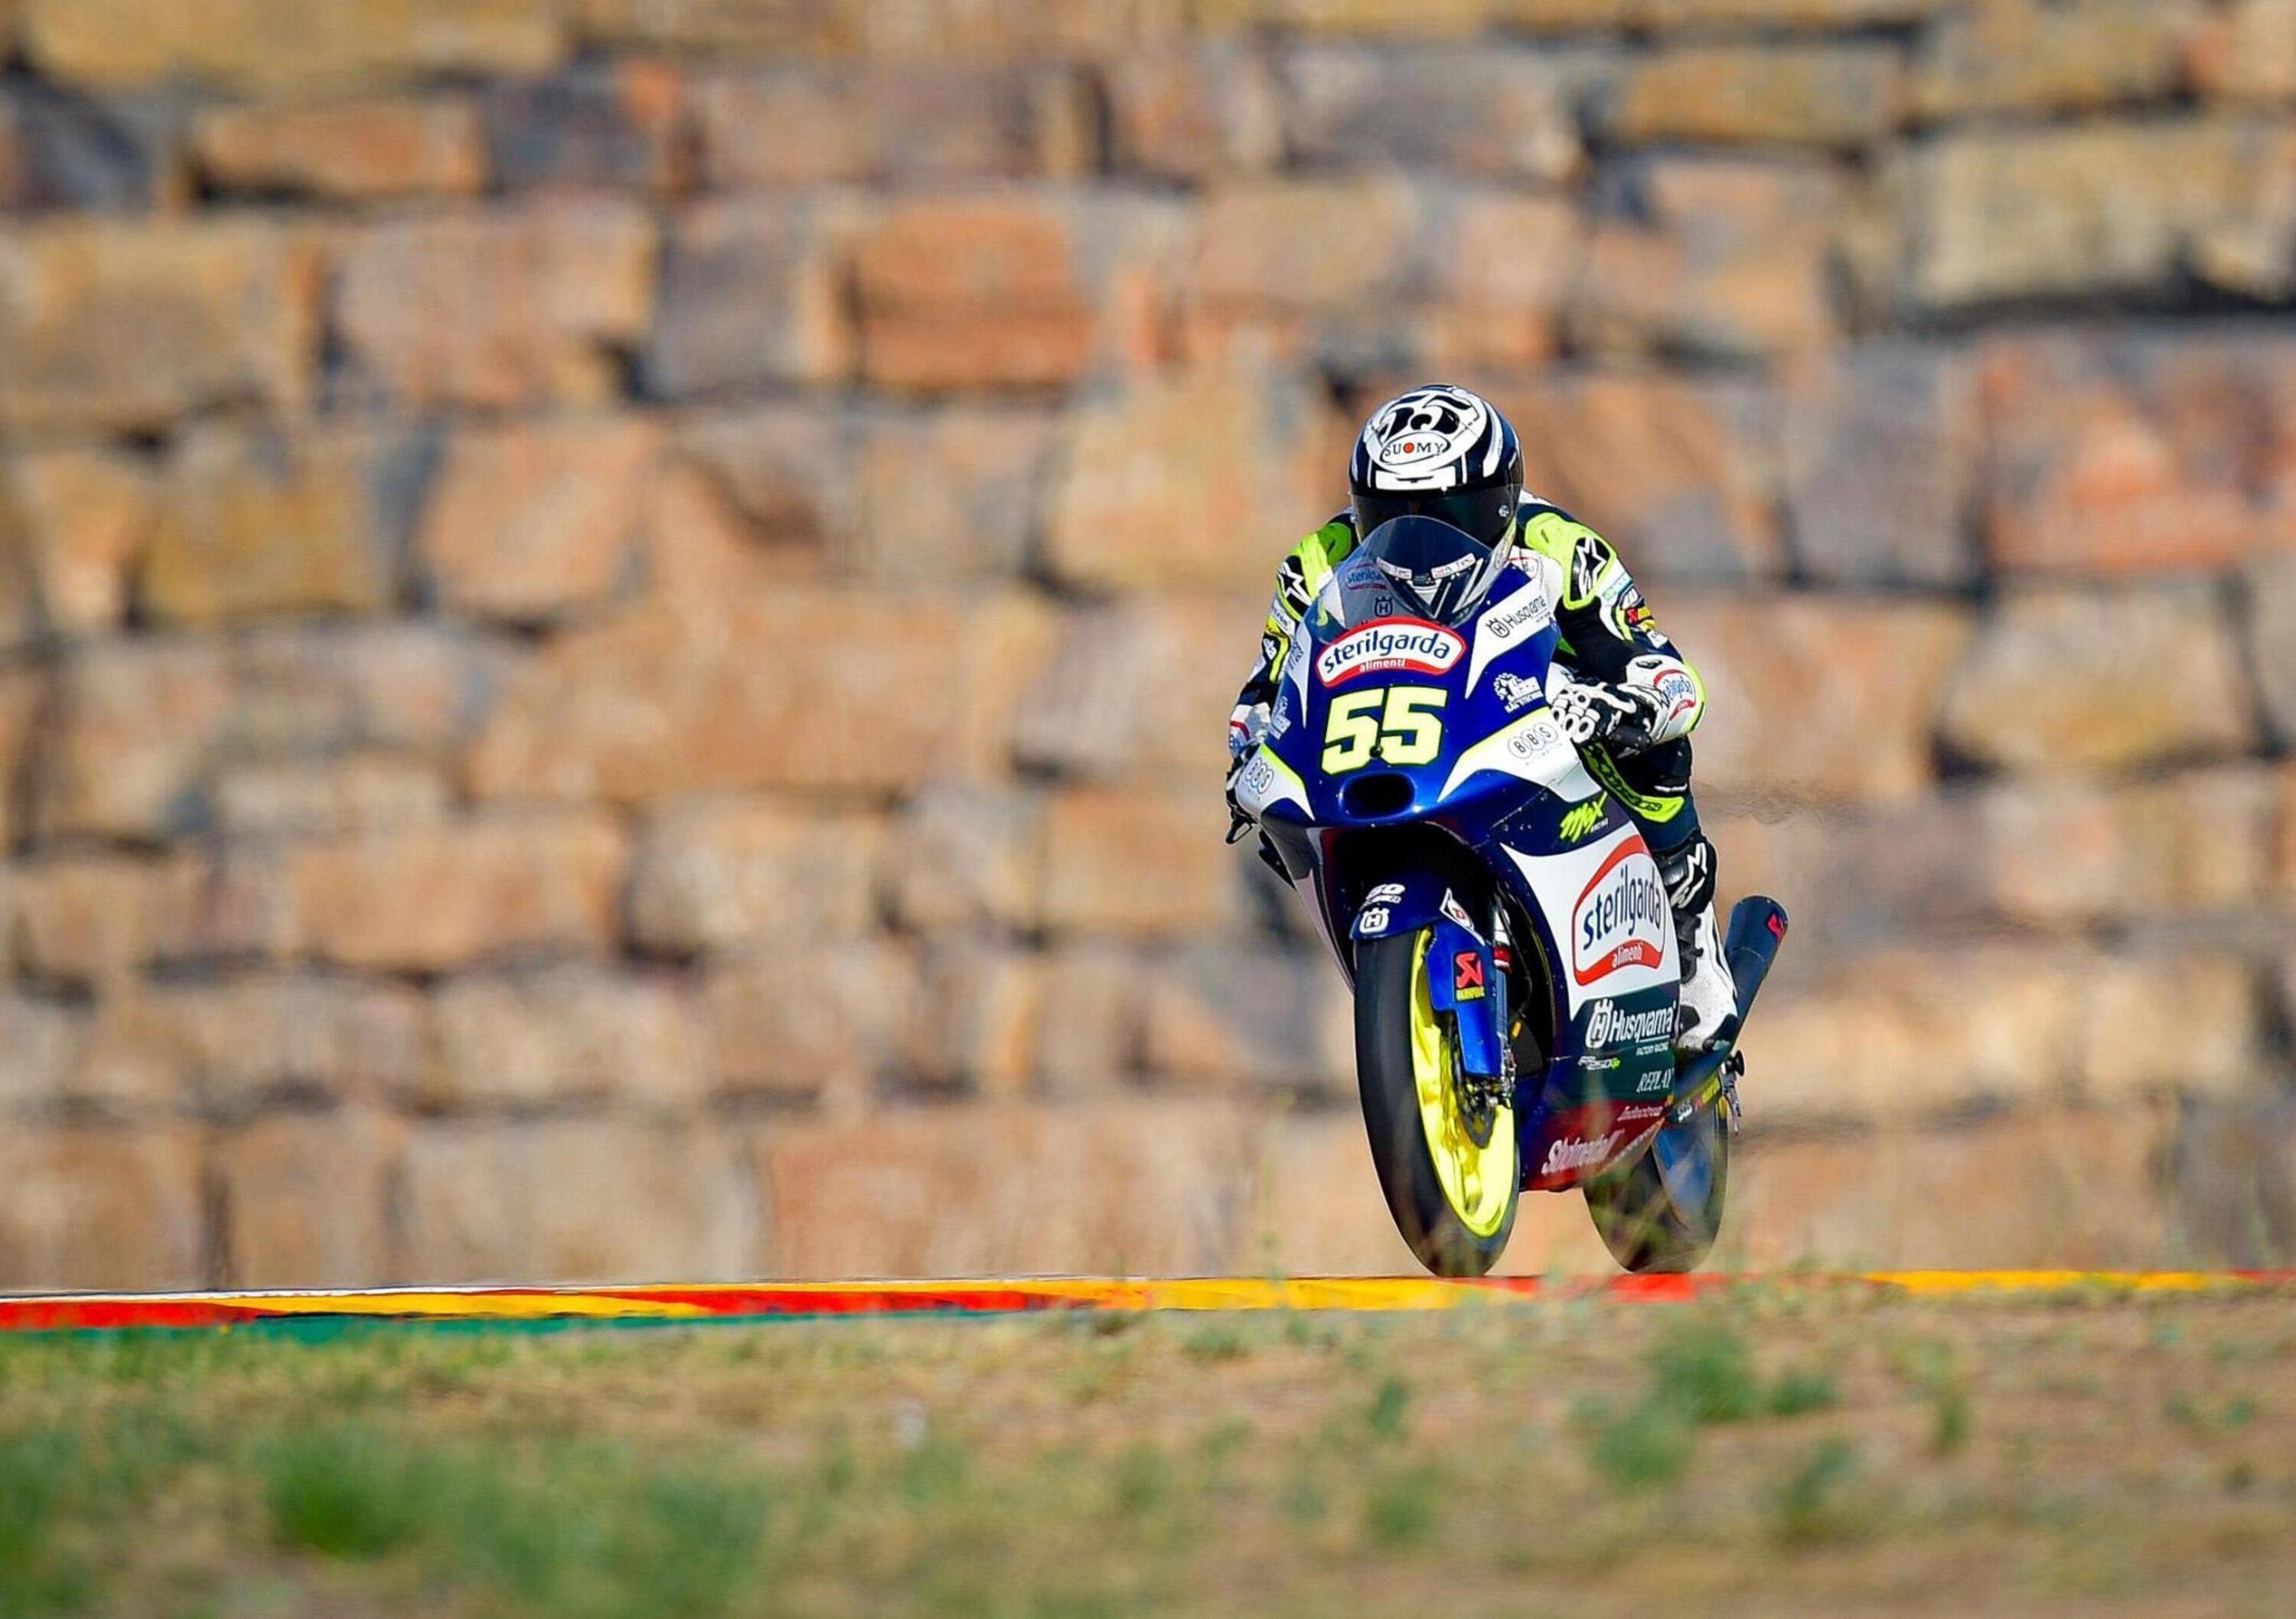 MotoGP 2021. GP di Aragon. Romano Fenati: &ldquo;Il mio carattere forte mi ha aiutato&rdquo;